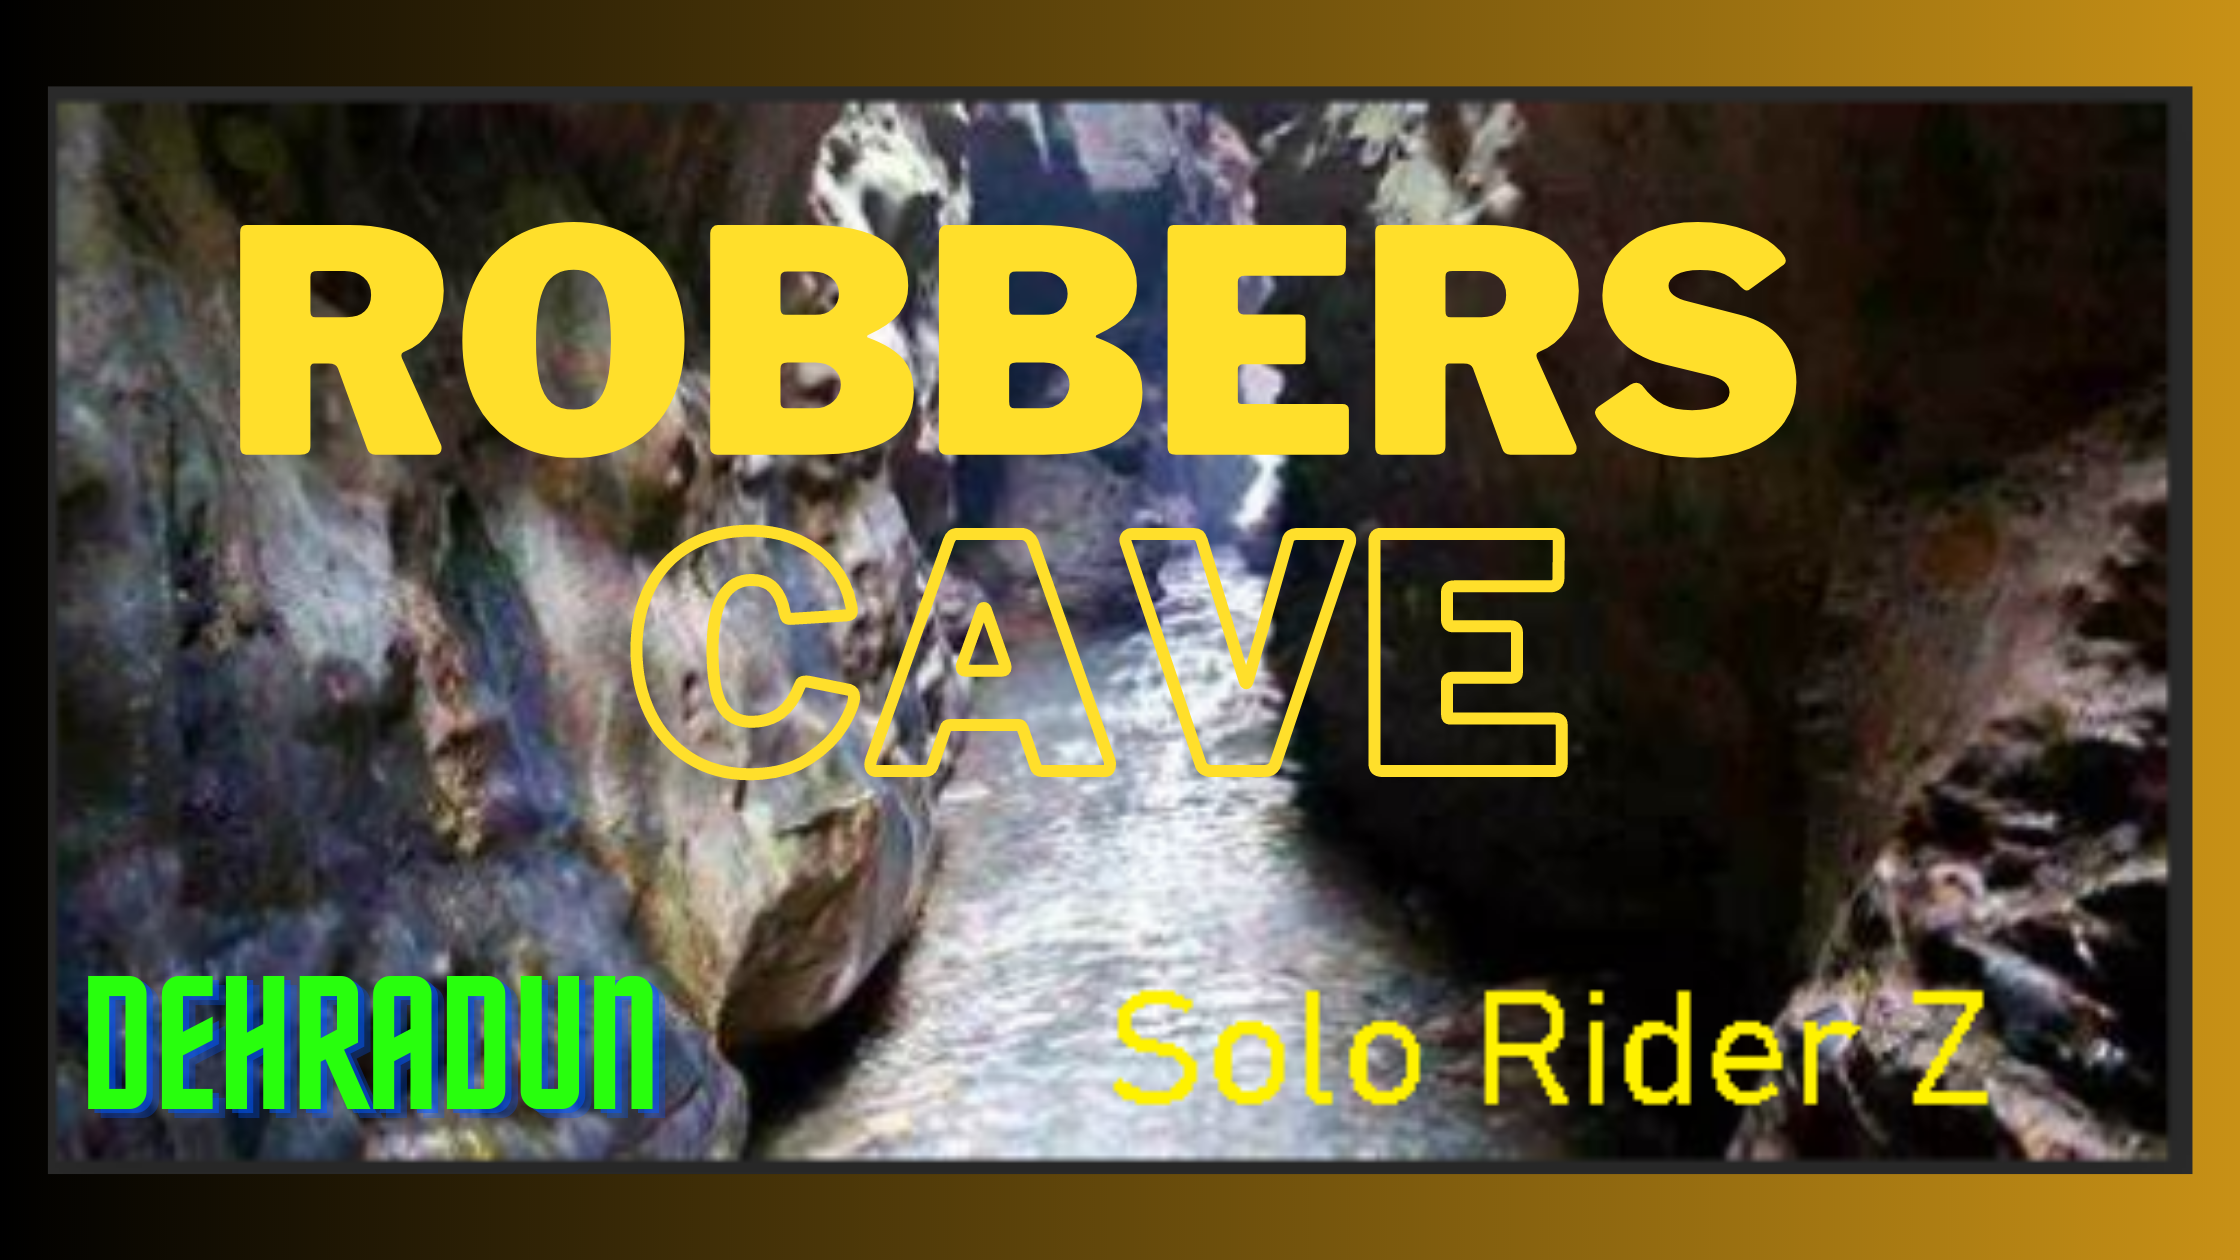 robbers cave, dehradun solo travel, solo rider z